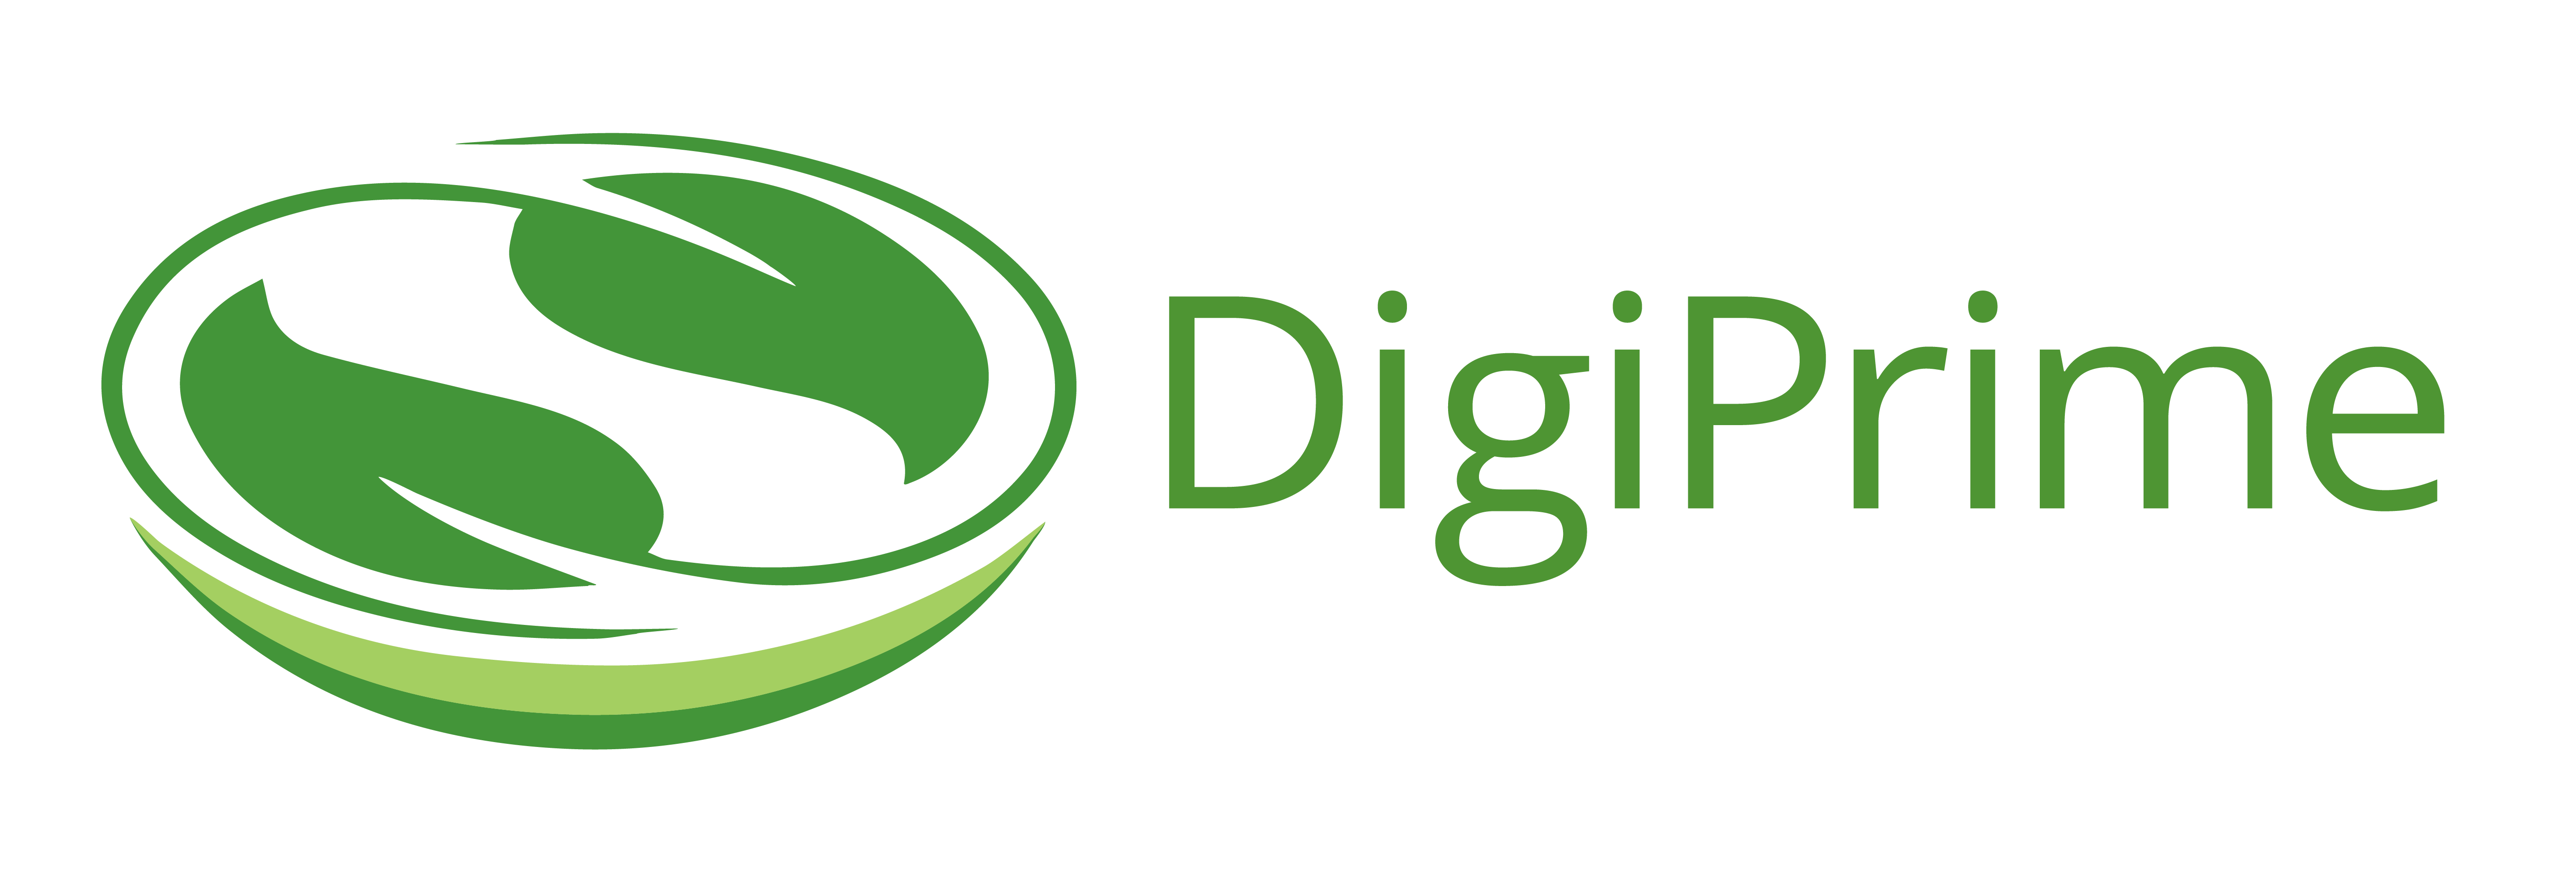 DigiPrime_logo